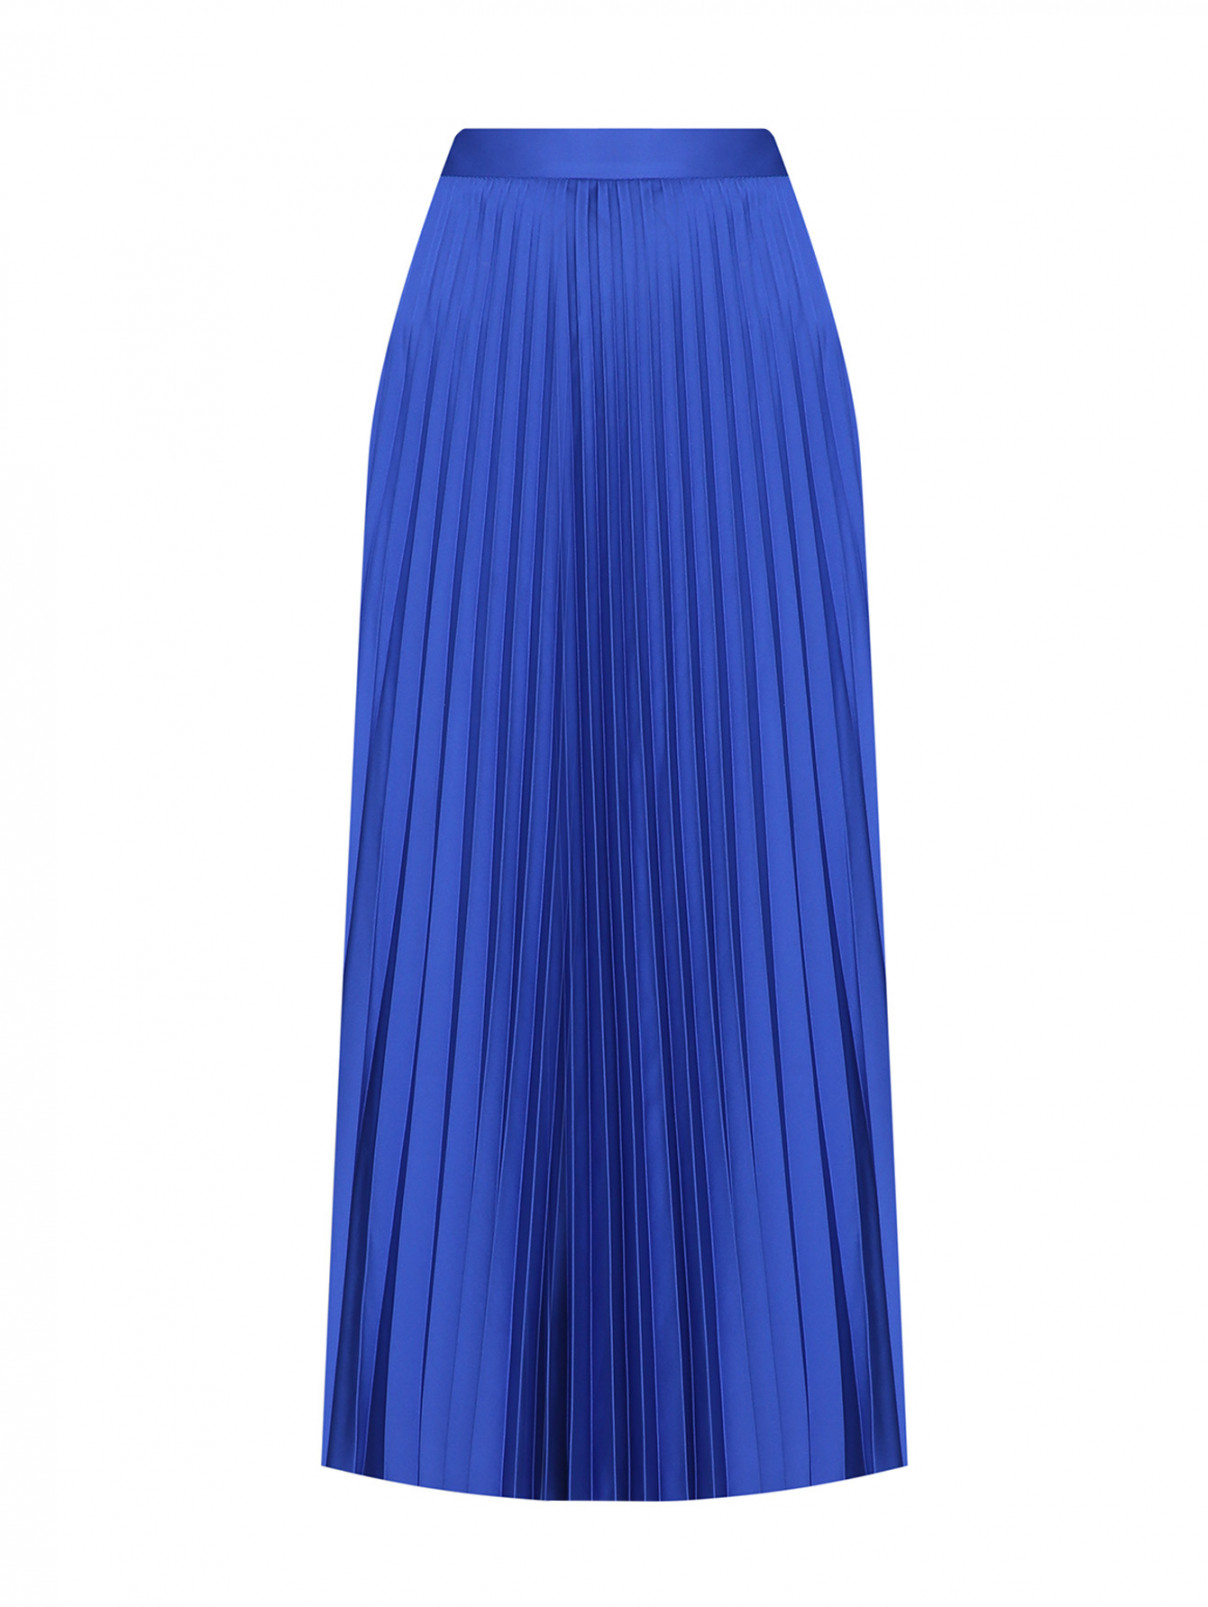 Плиссированная юбка-миди Shade  –  Общий вид  – Цвет:  Синий